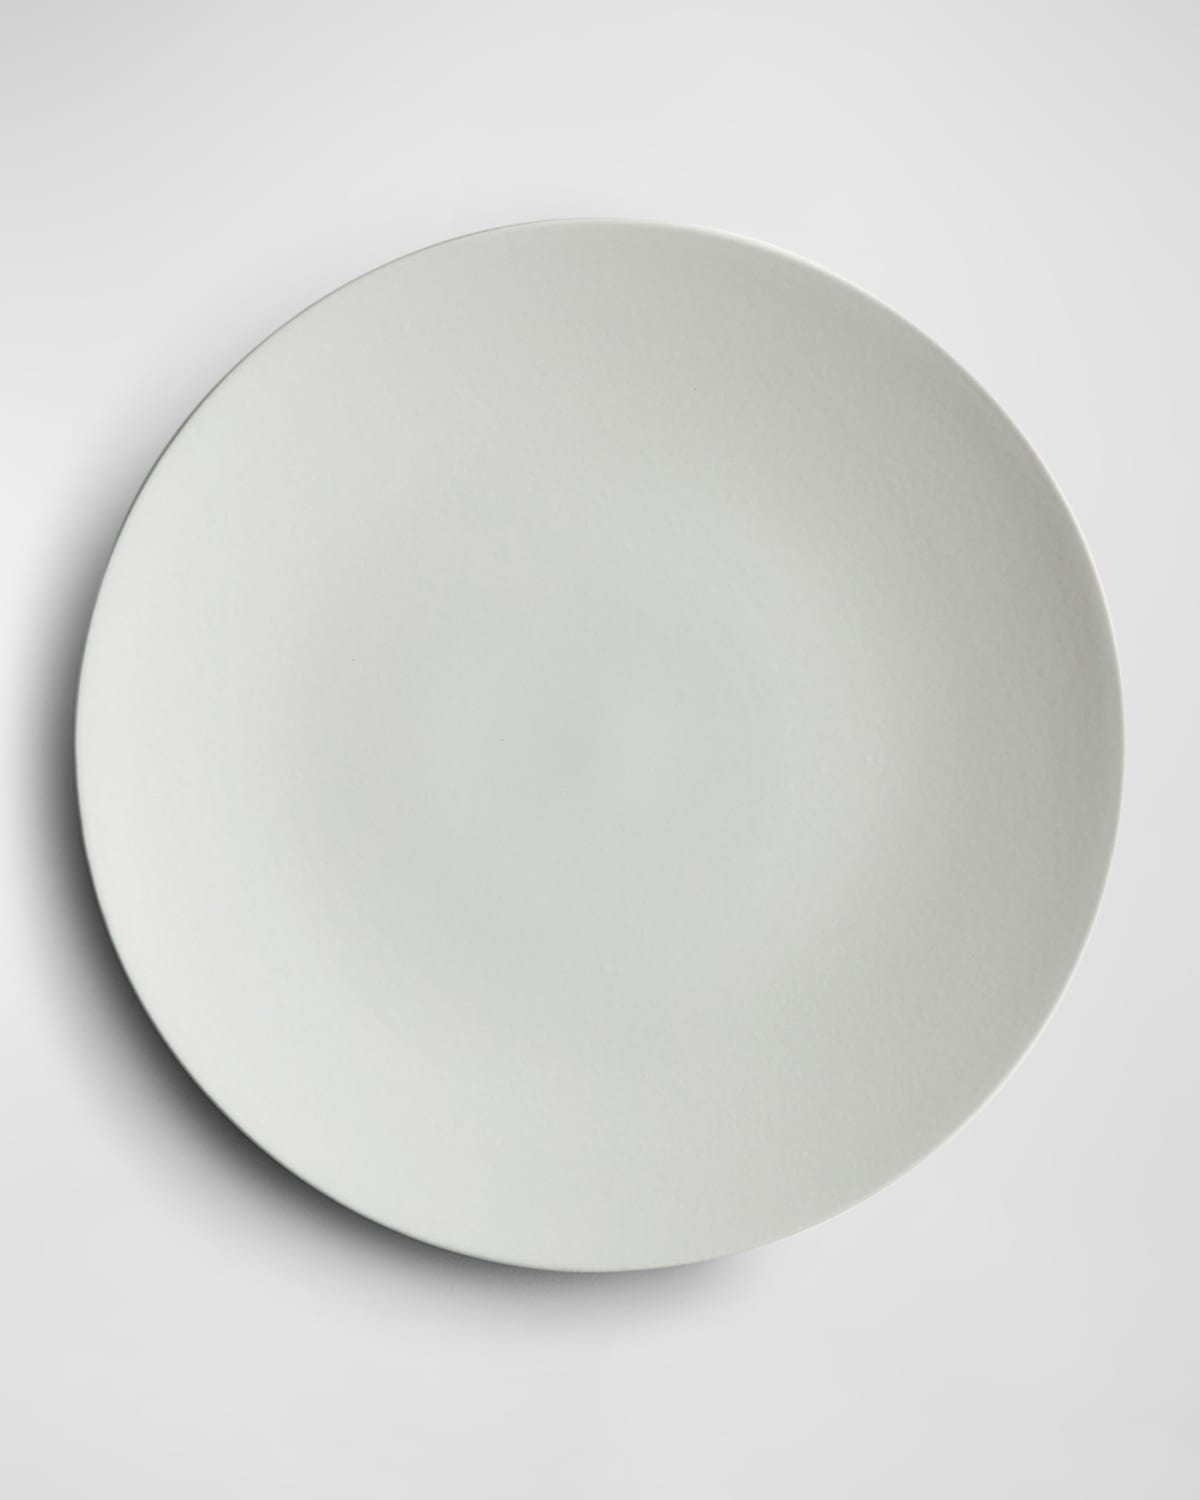 Shop Lifetime Brands Stone Serving Platter In Light Grey